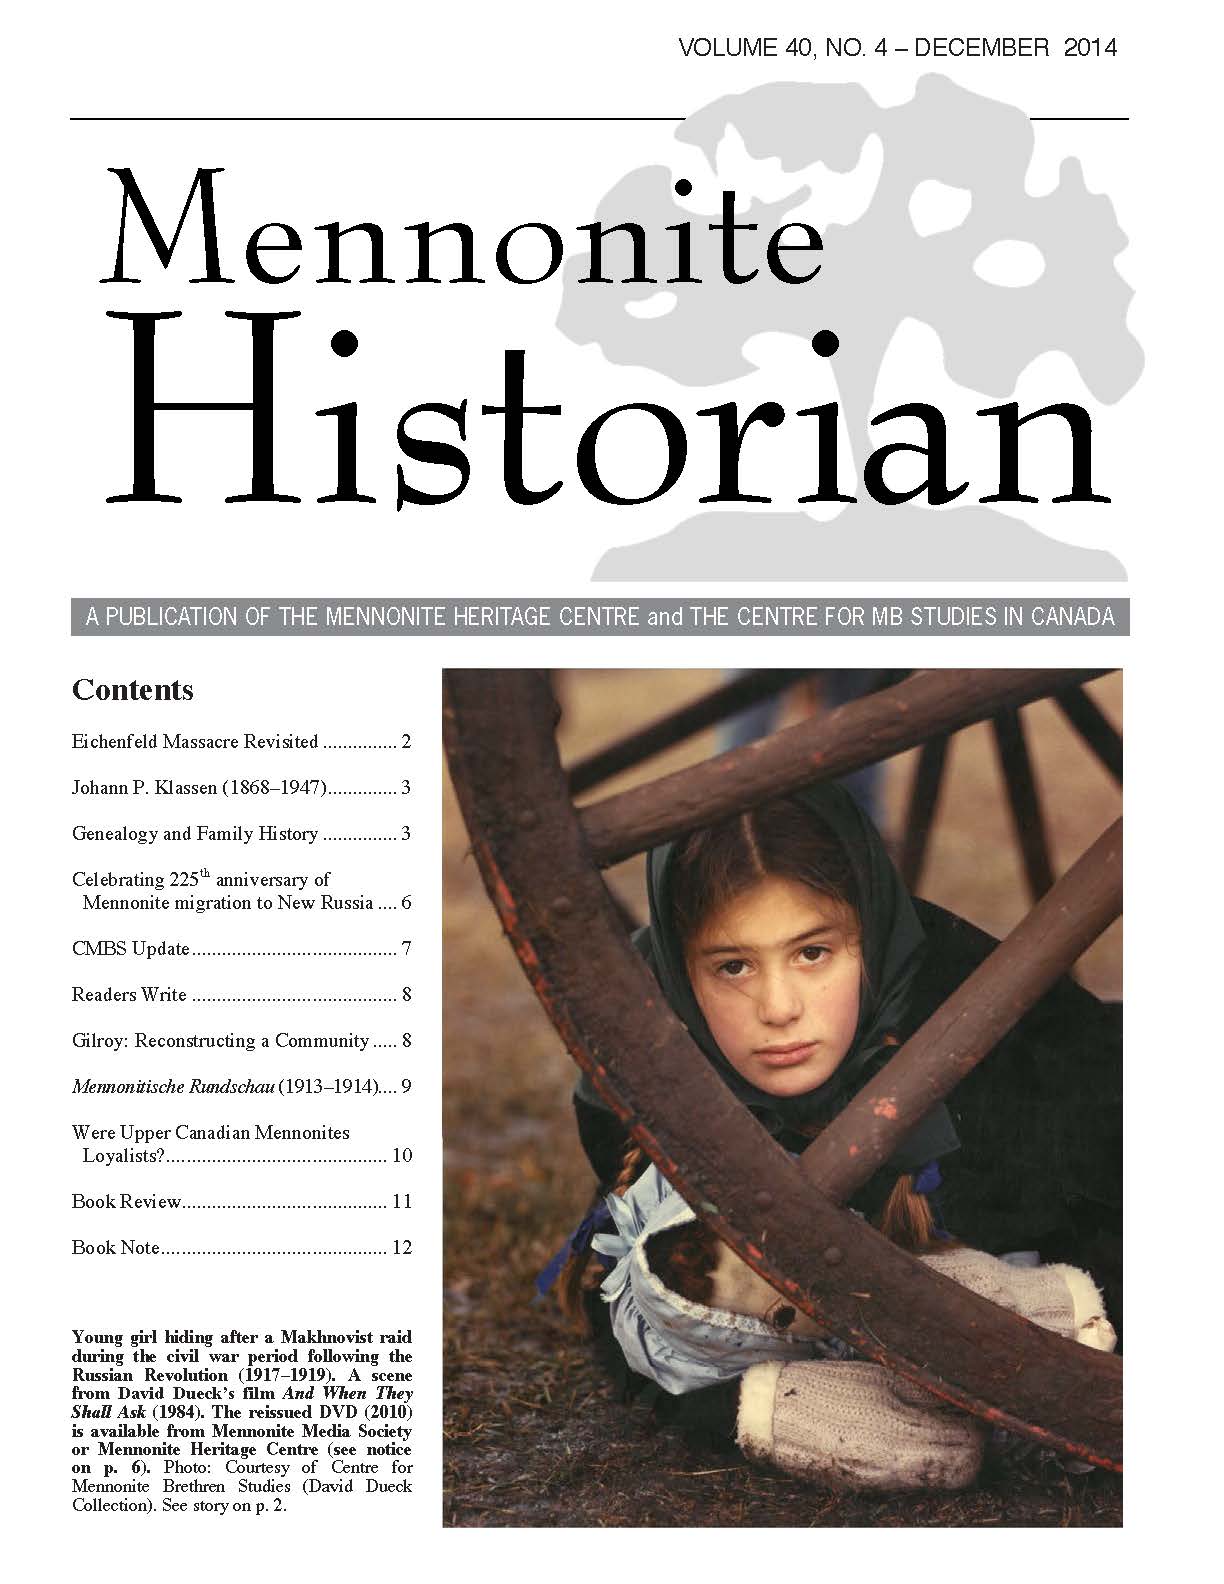 Mennonite Historian (December 2014)